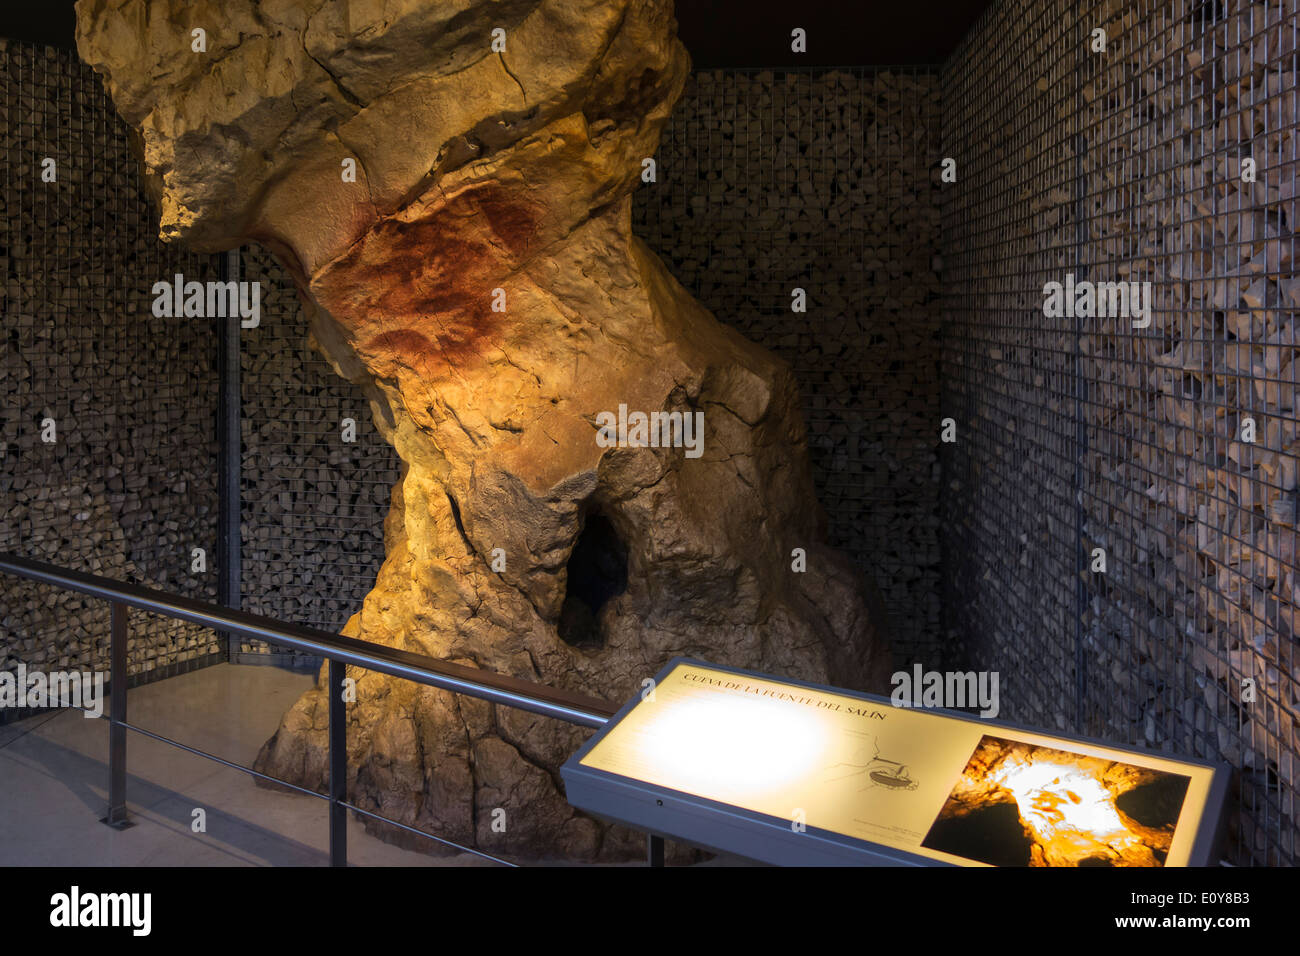 Replik von Altamira Höhle zeigt menschliche Hände, National Museum and Research Center von Altamira, Santillana del Mar, Spanien Stockfoto